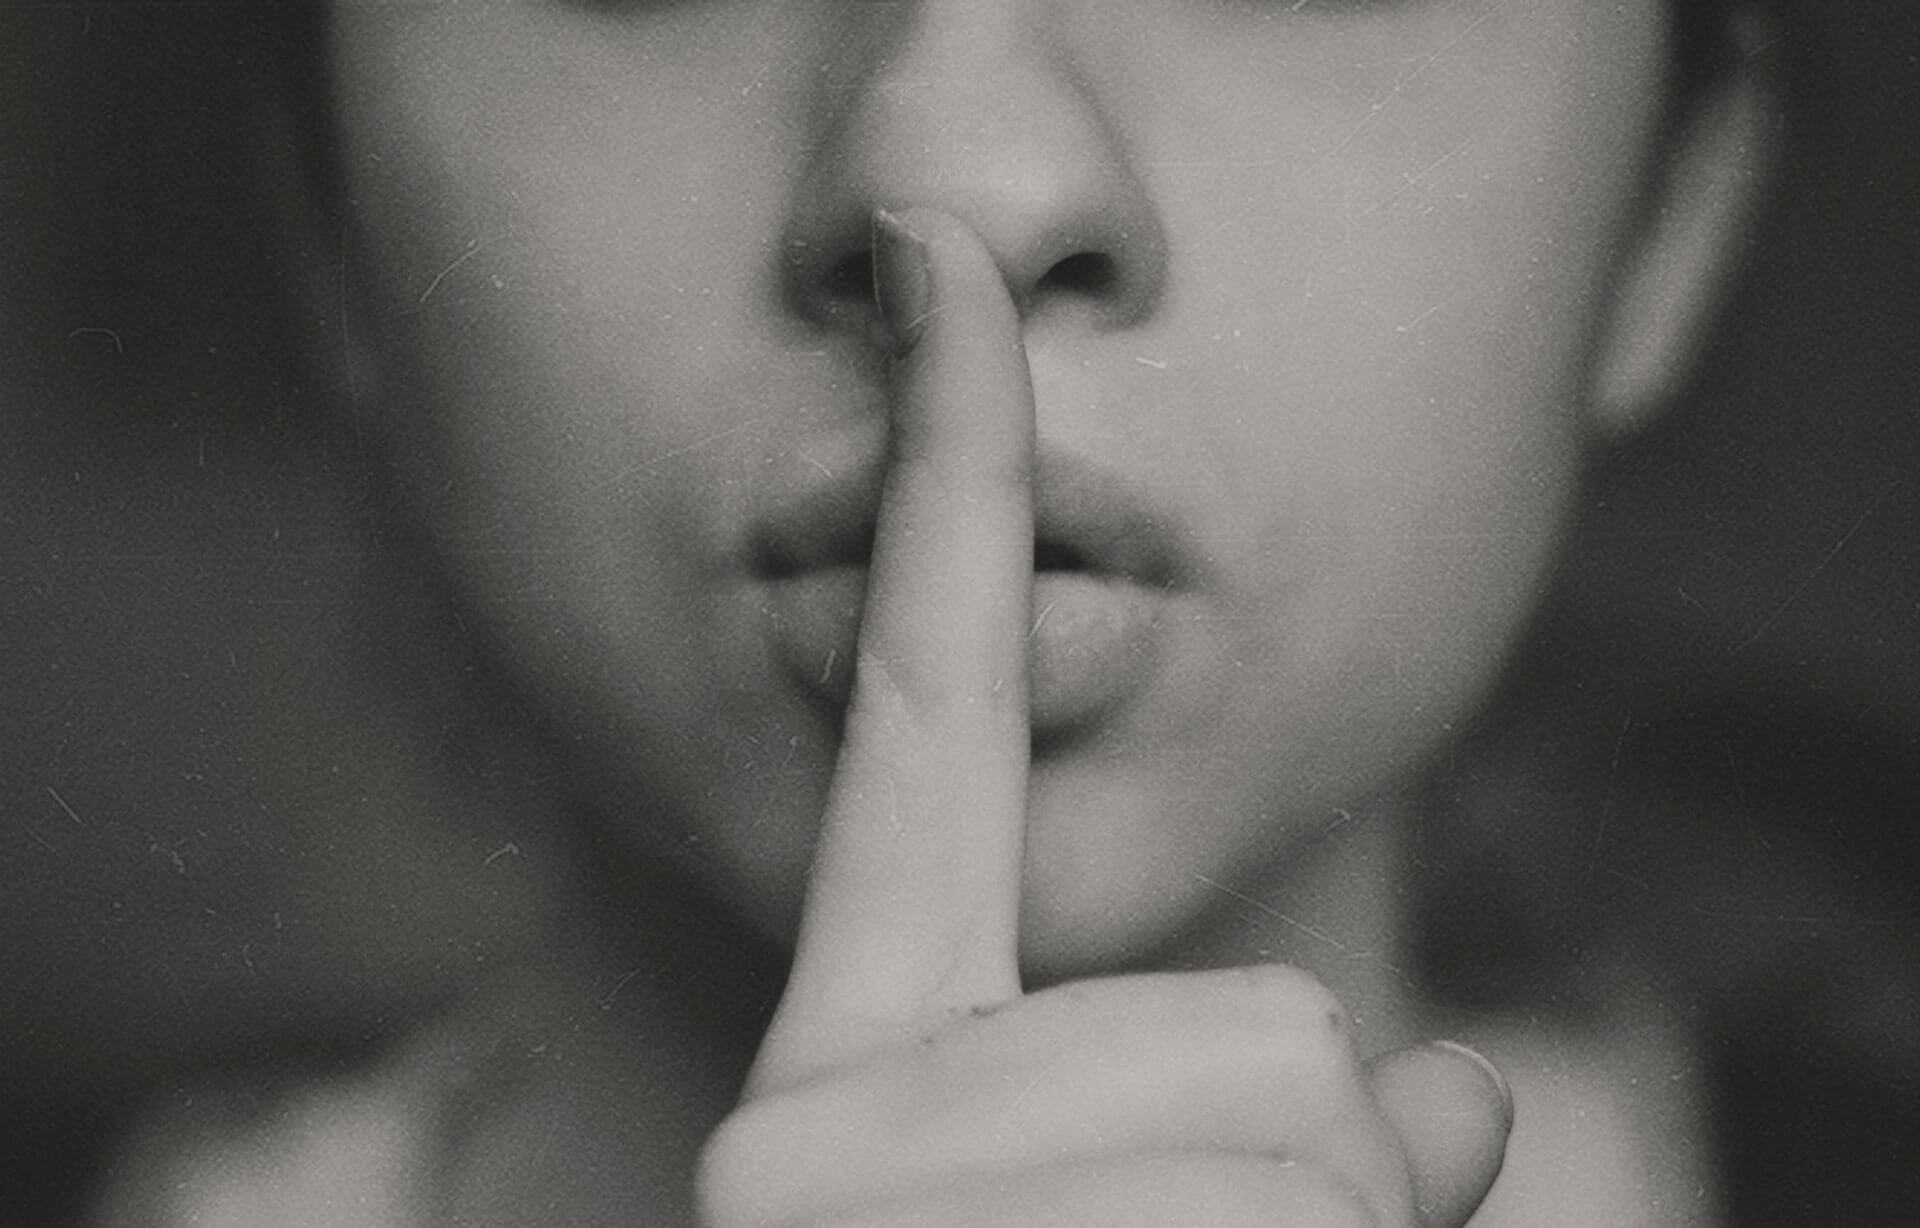 finger-over-lips-as-secret